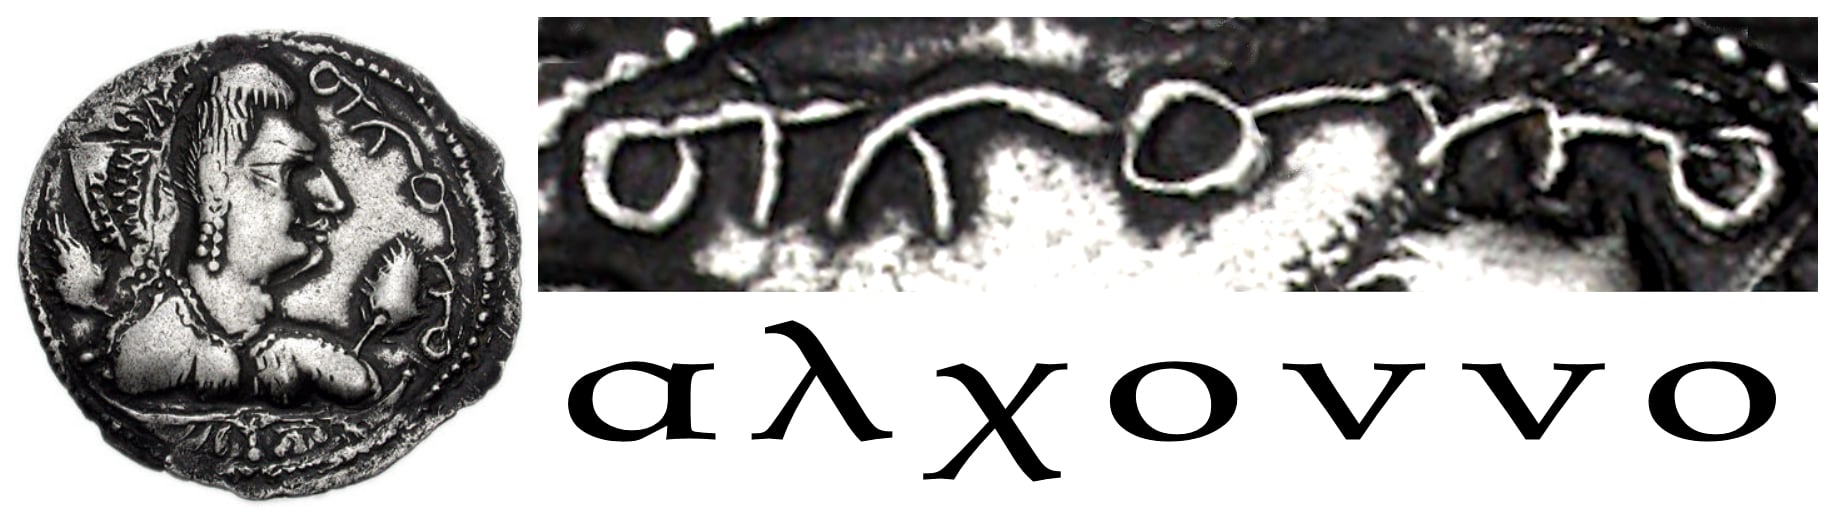 Bactrian coin Greek alphabet